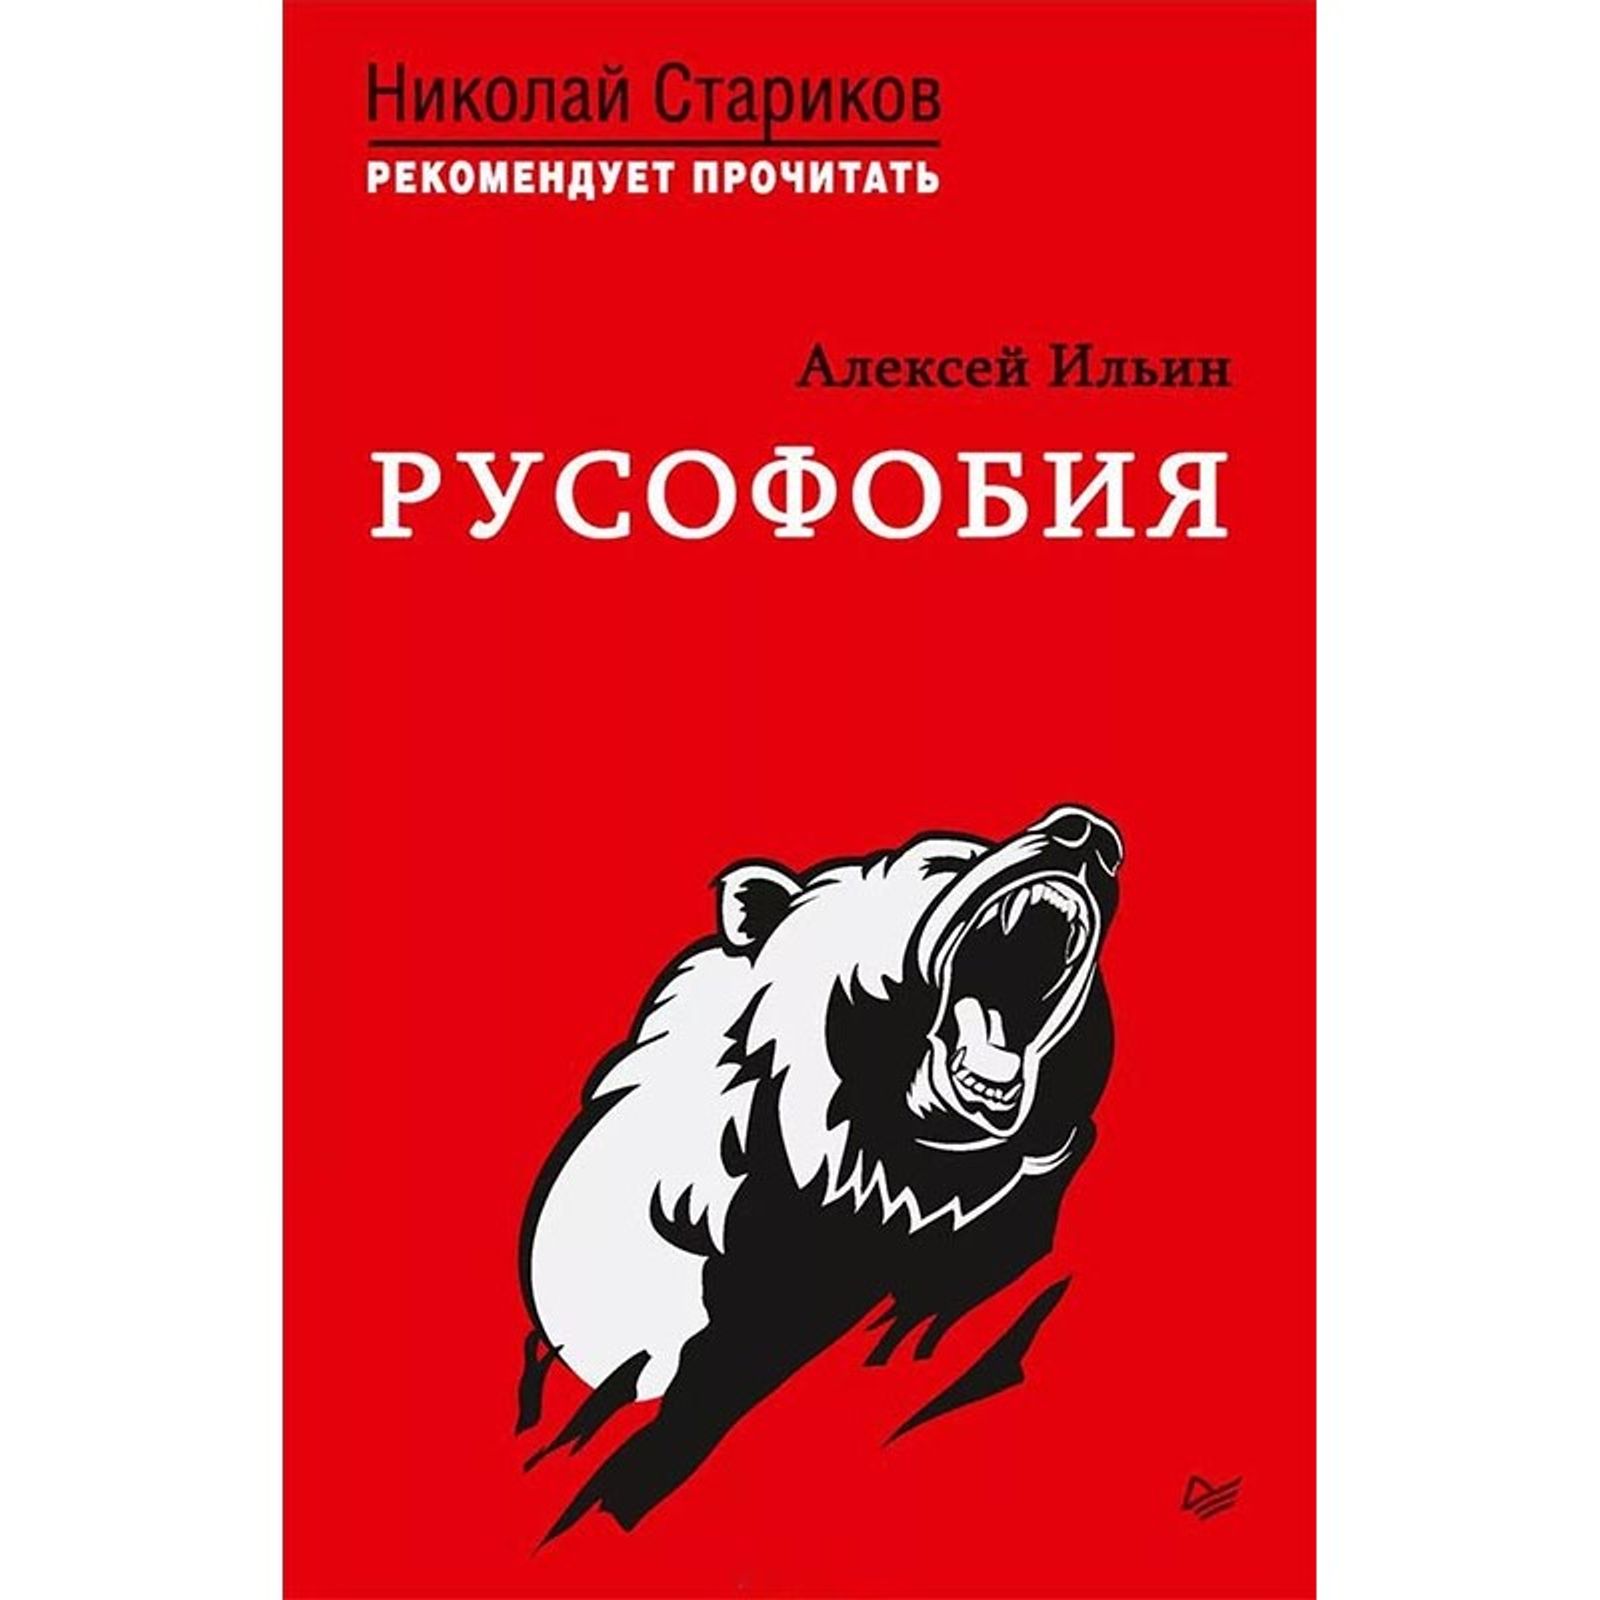 Книга Алексея Ильина